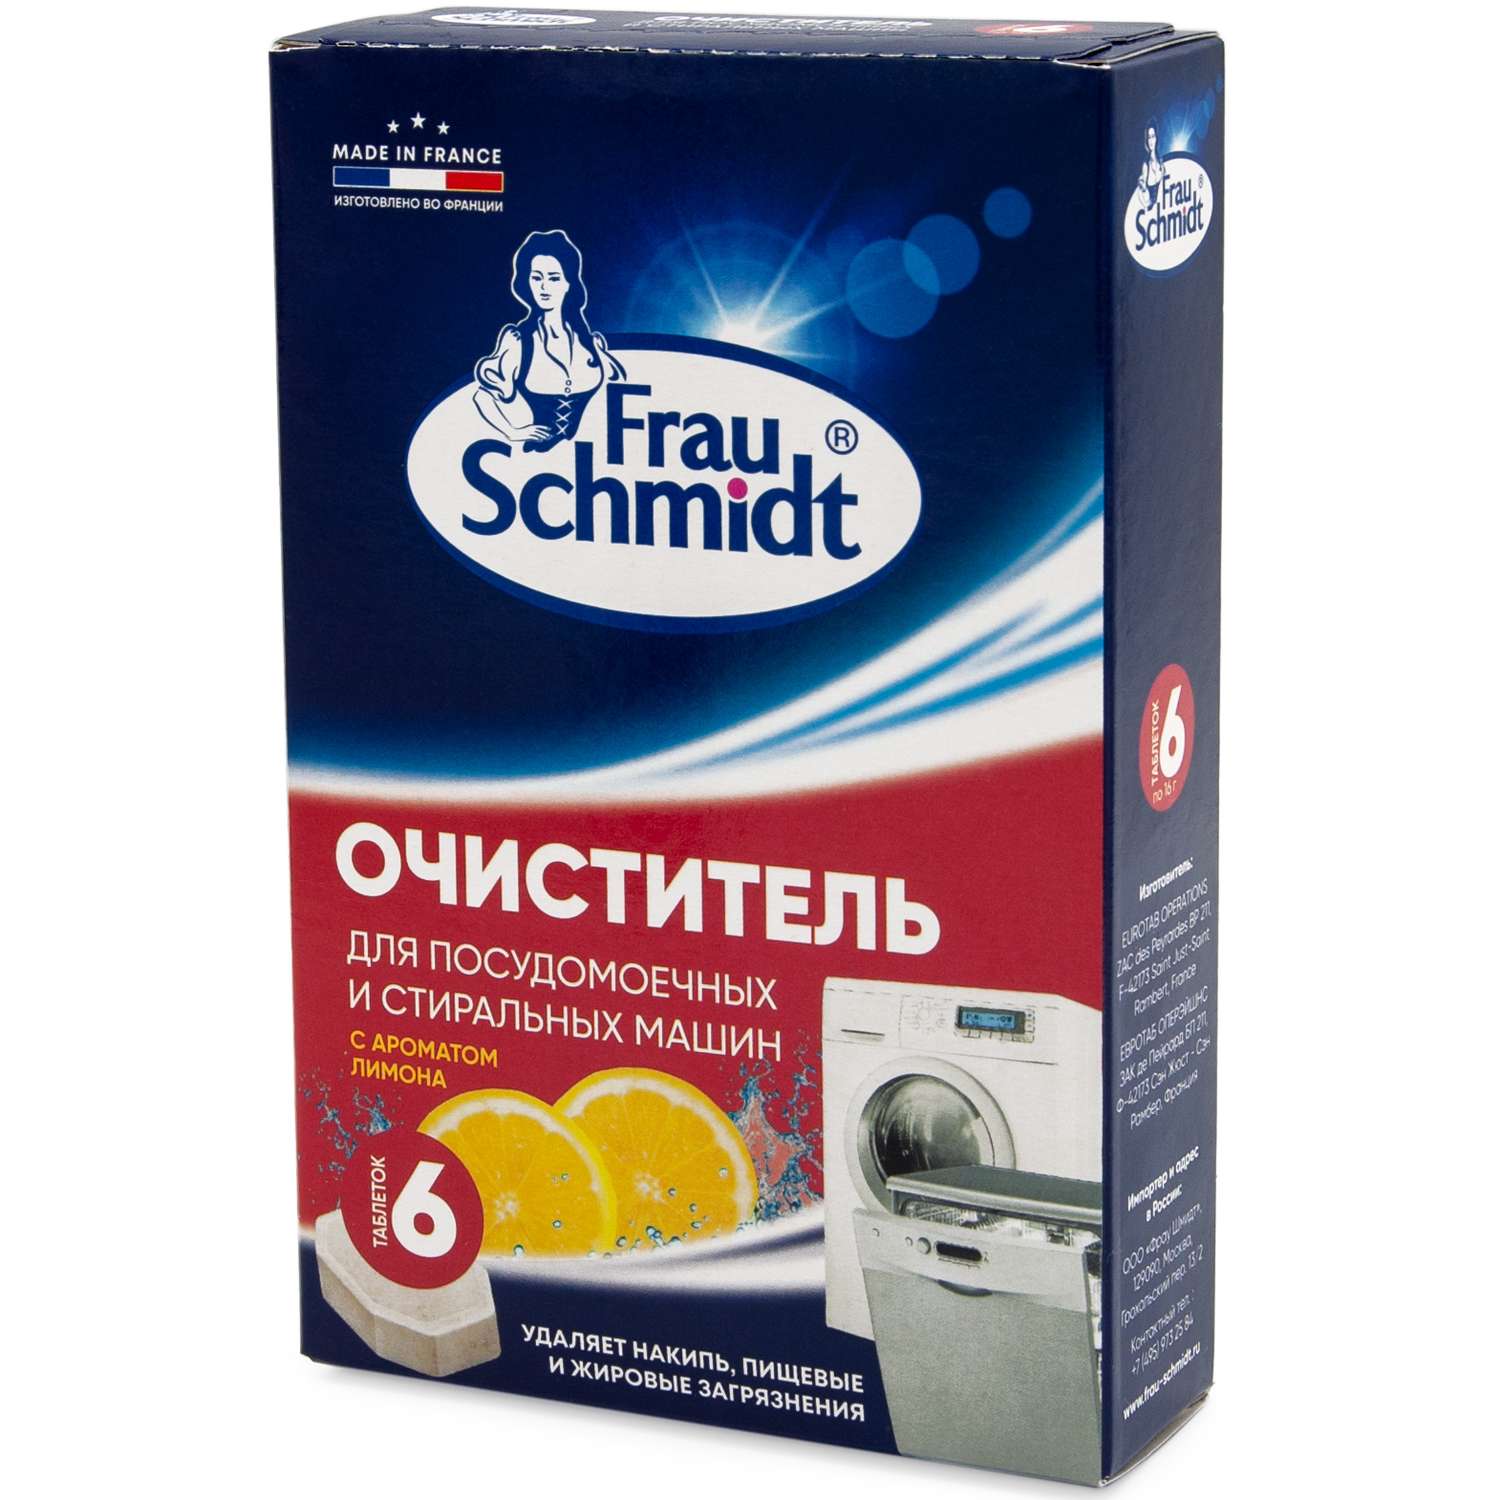 Чистящее средство Frau Schmidt для стиральных и посудомоечных машин 6 таблеток - фото 5